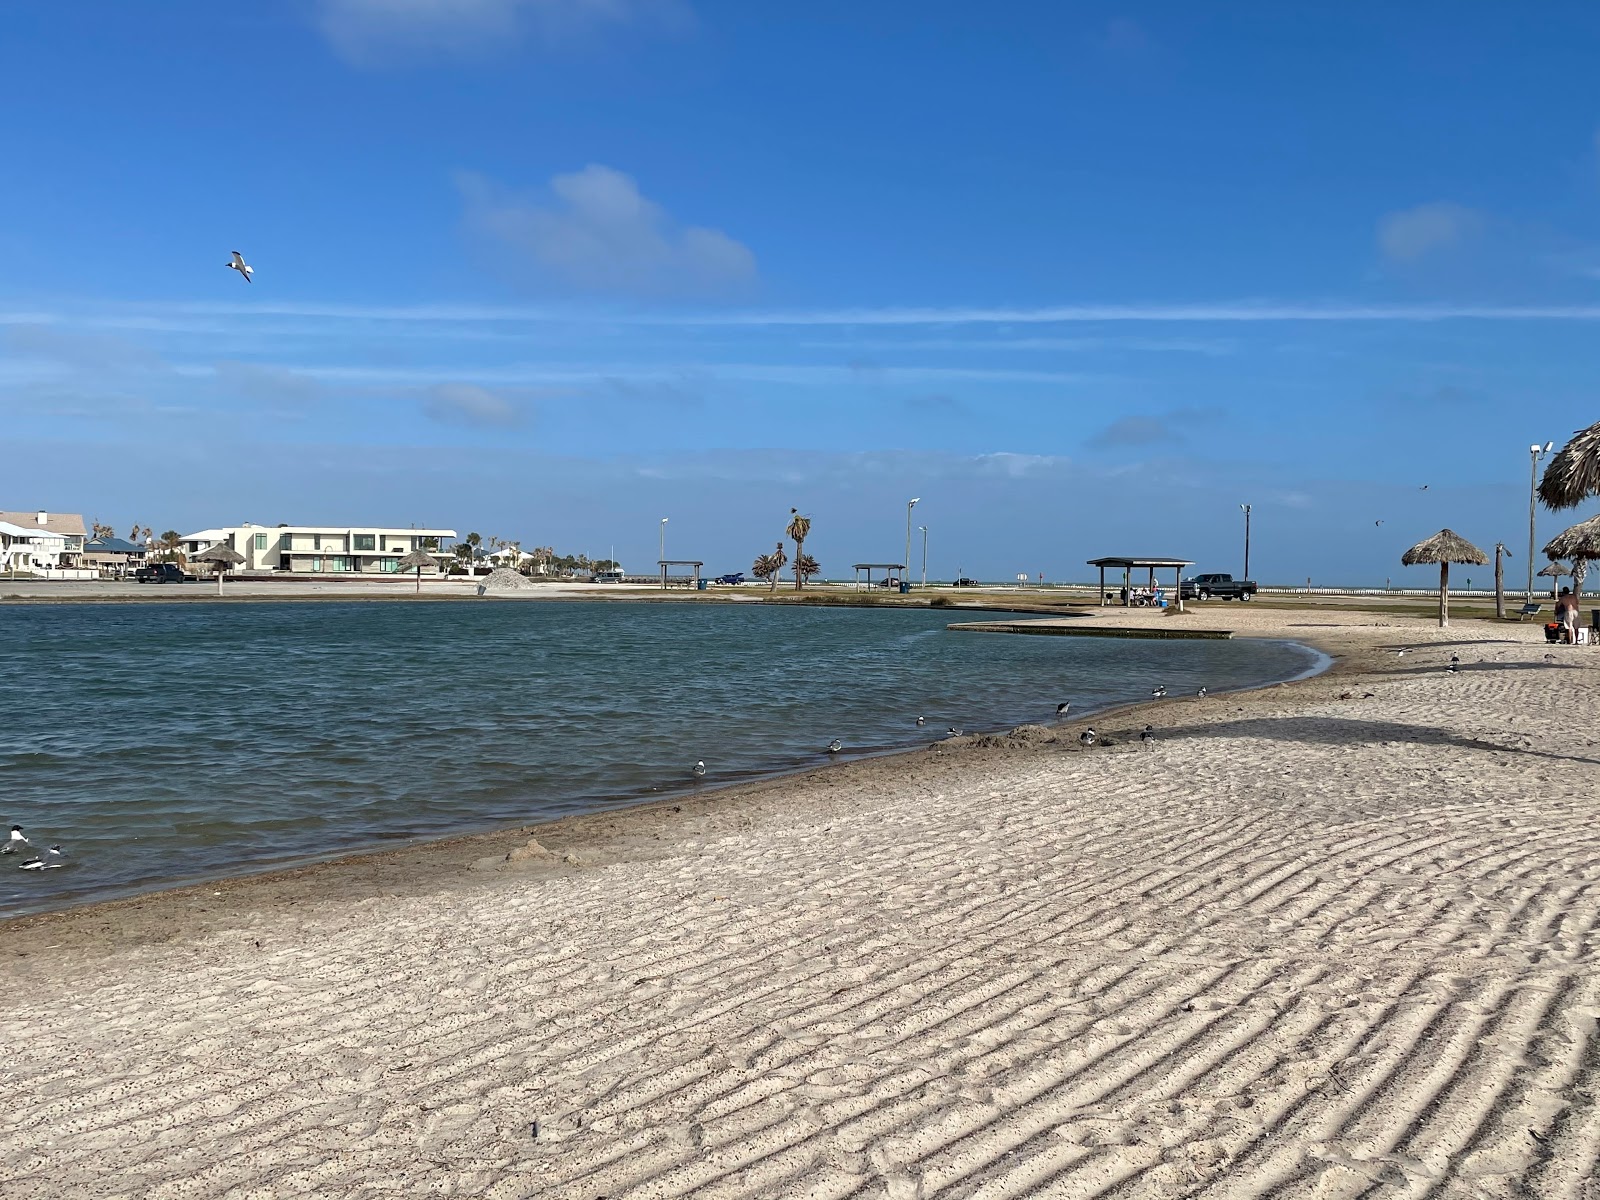 Zdjęcie Rockport beach z powierzchnią jasny piasek